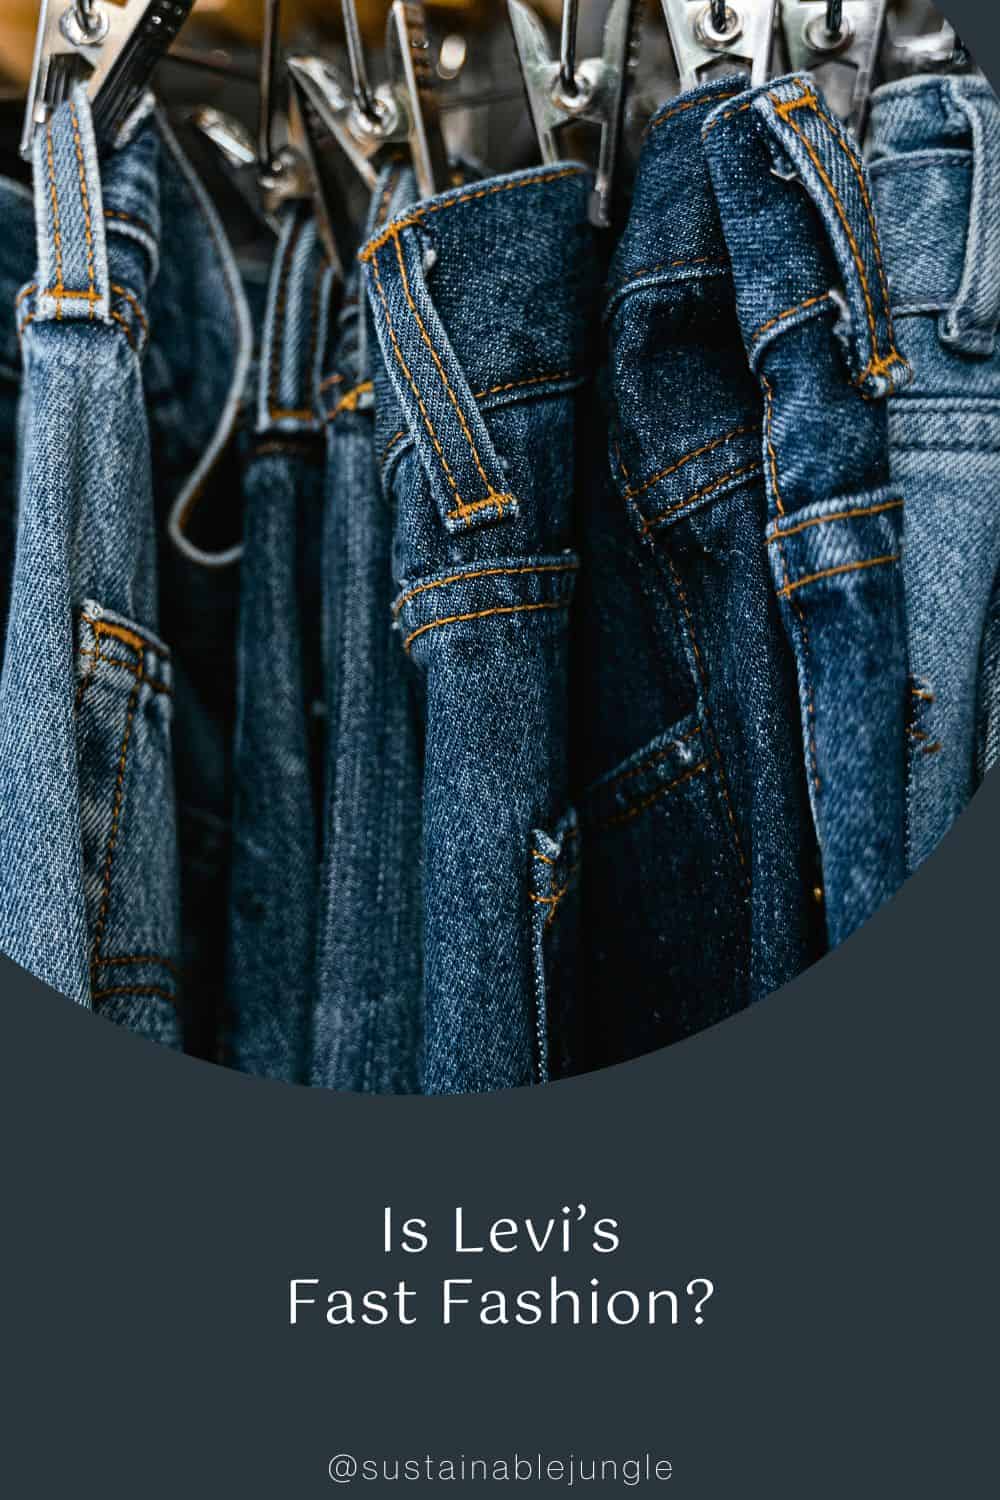 Is Levi’s Fast Fashion? Image by MART PRODUCTION #islevisfastfashion #islevisethical #Levissustainability #howethicalislevis #islevissustainable #sustainablejungle